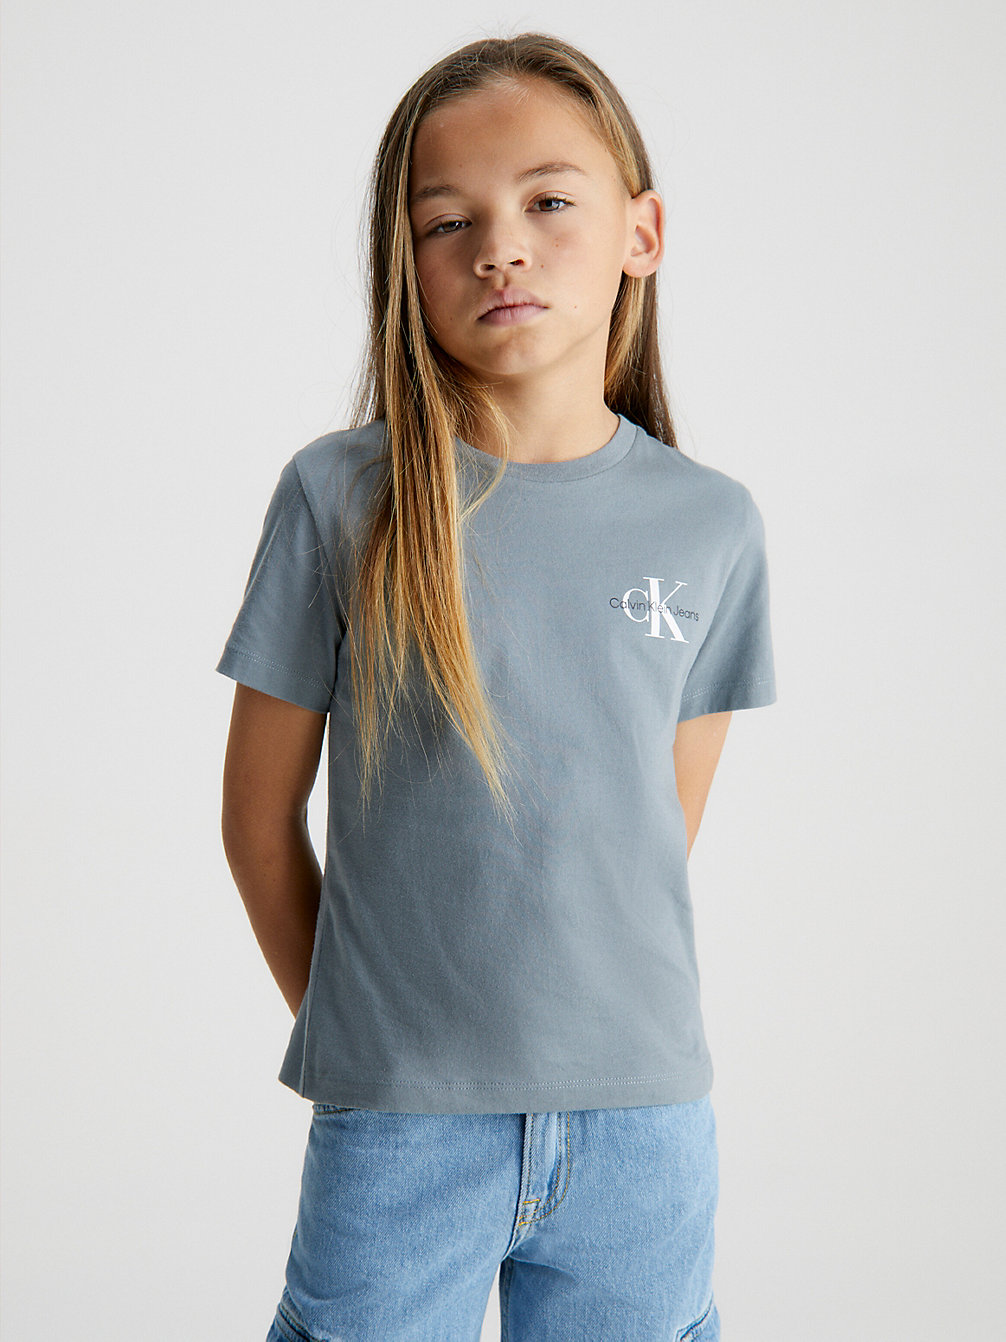 OVERCAST GREY > T-Shirt Z Bawełny Organicznej > undefined boys - Calvin Klein